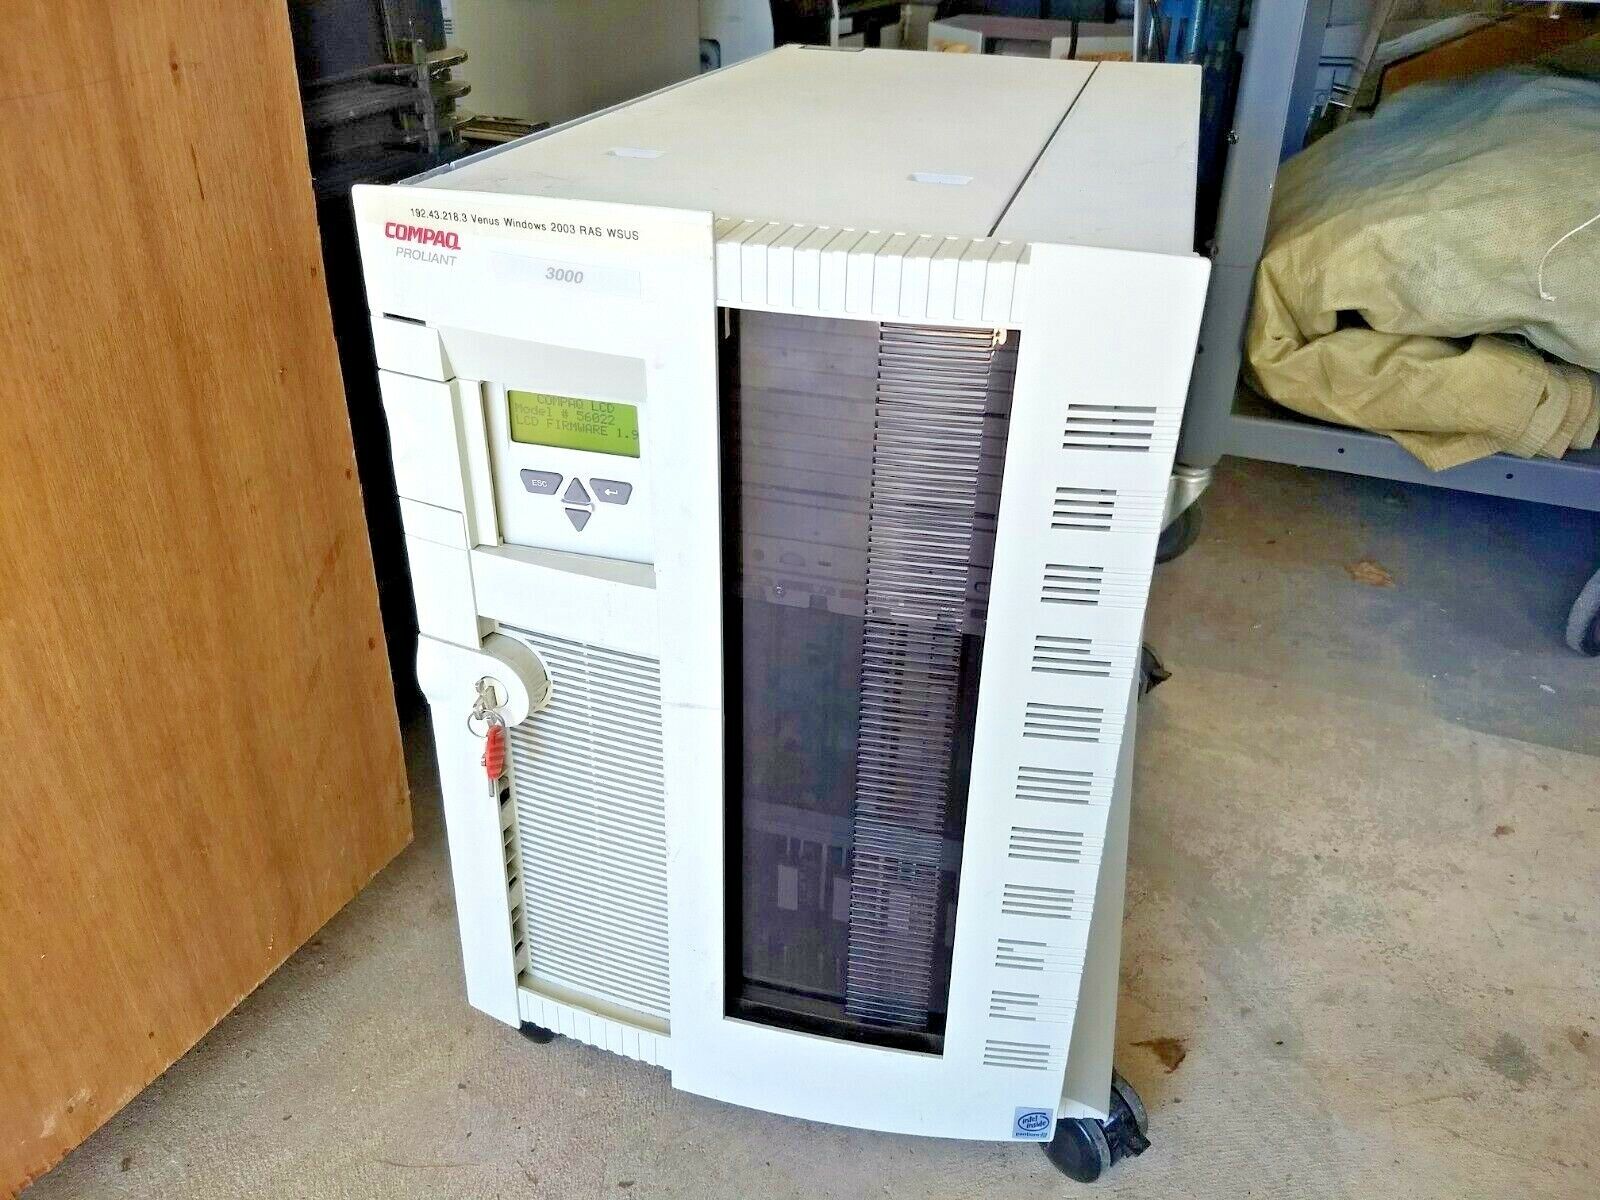 Compaq Proliant 3000 Server Series ES1003